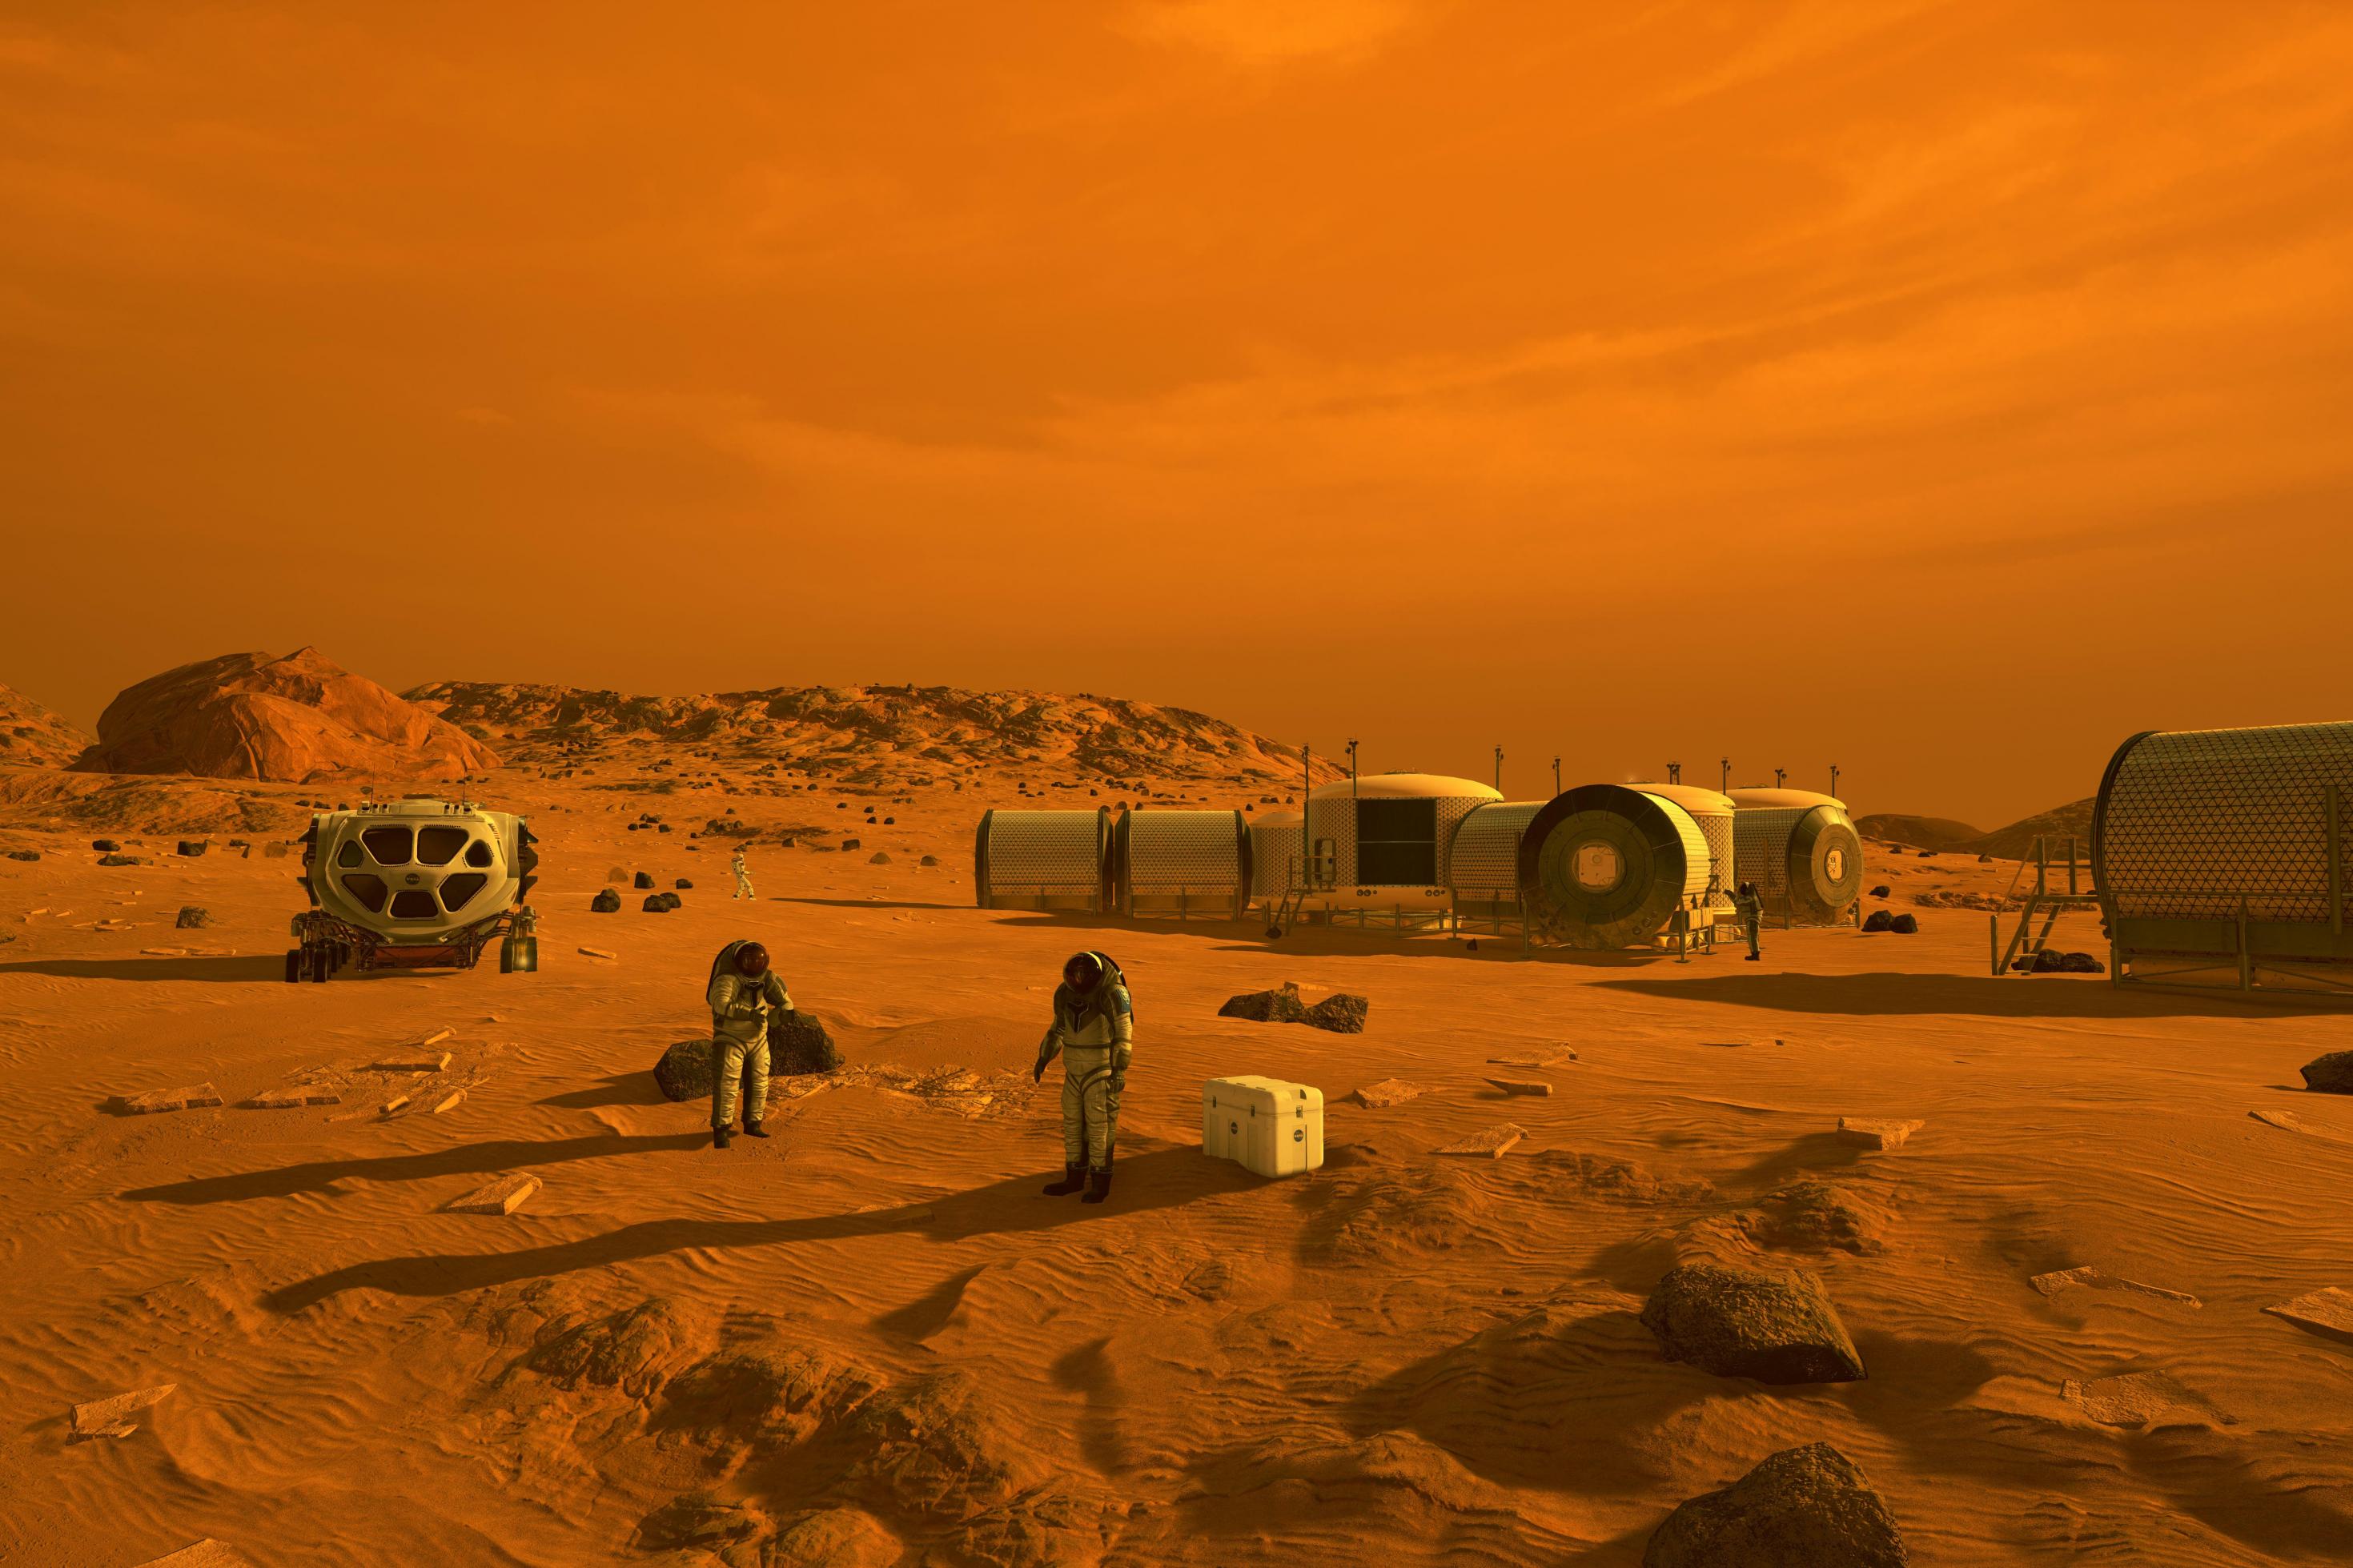 Auf dieser künstleriscehn Darstellung sind Menschen im Astronautenanzug und ein Habitate auf dem Mars zu sehen. Das gesamte Bild ist in rot-braunen Tönen gehalten.